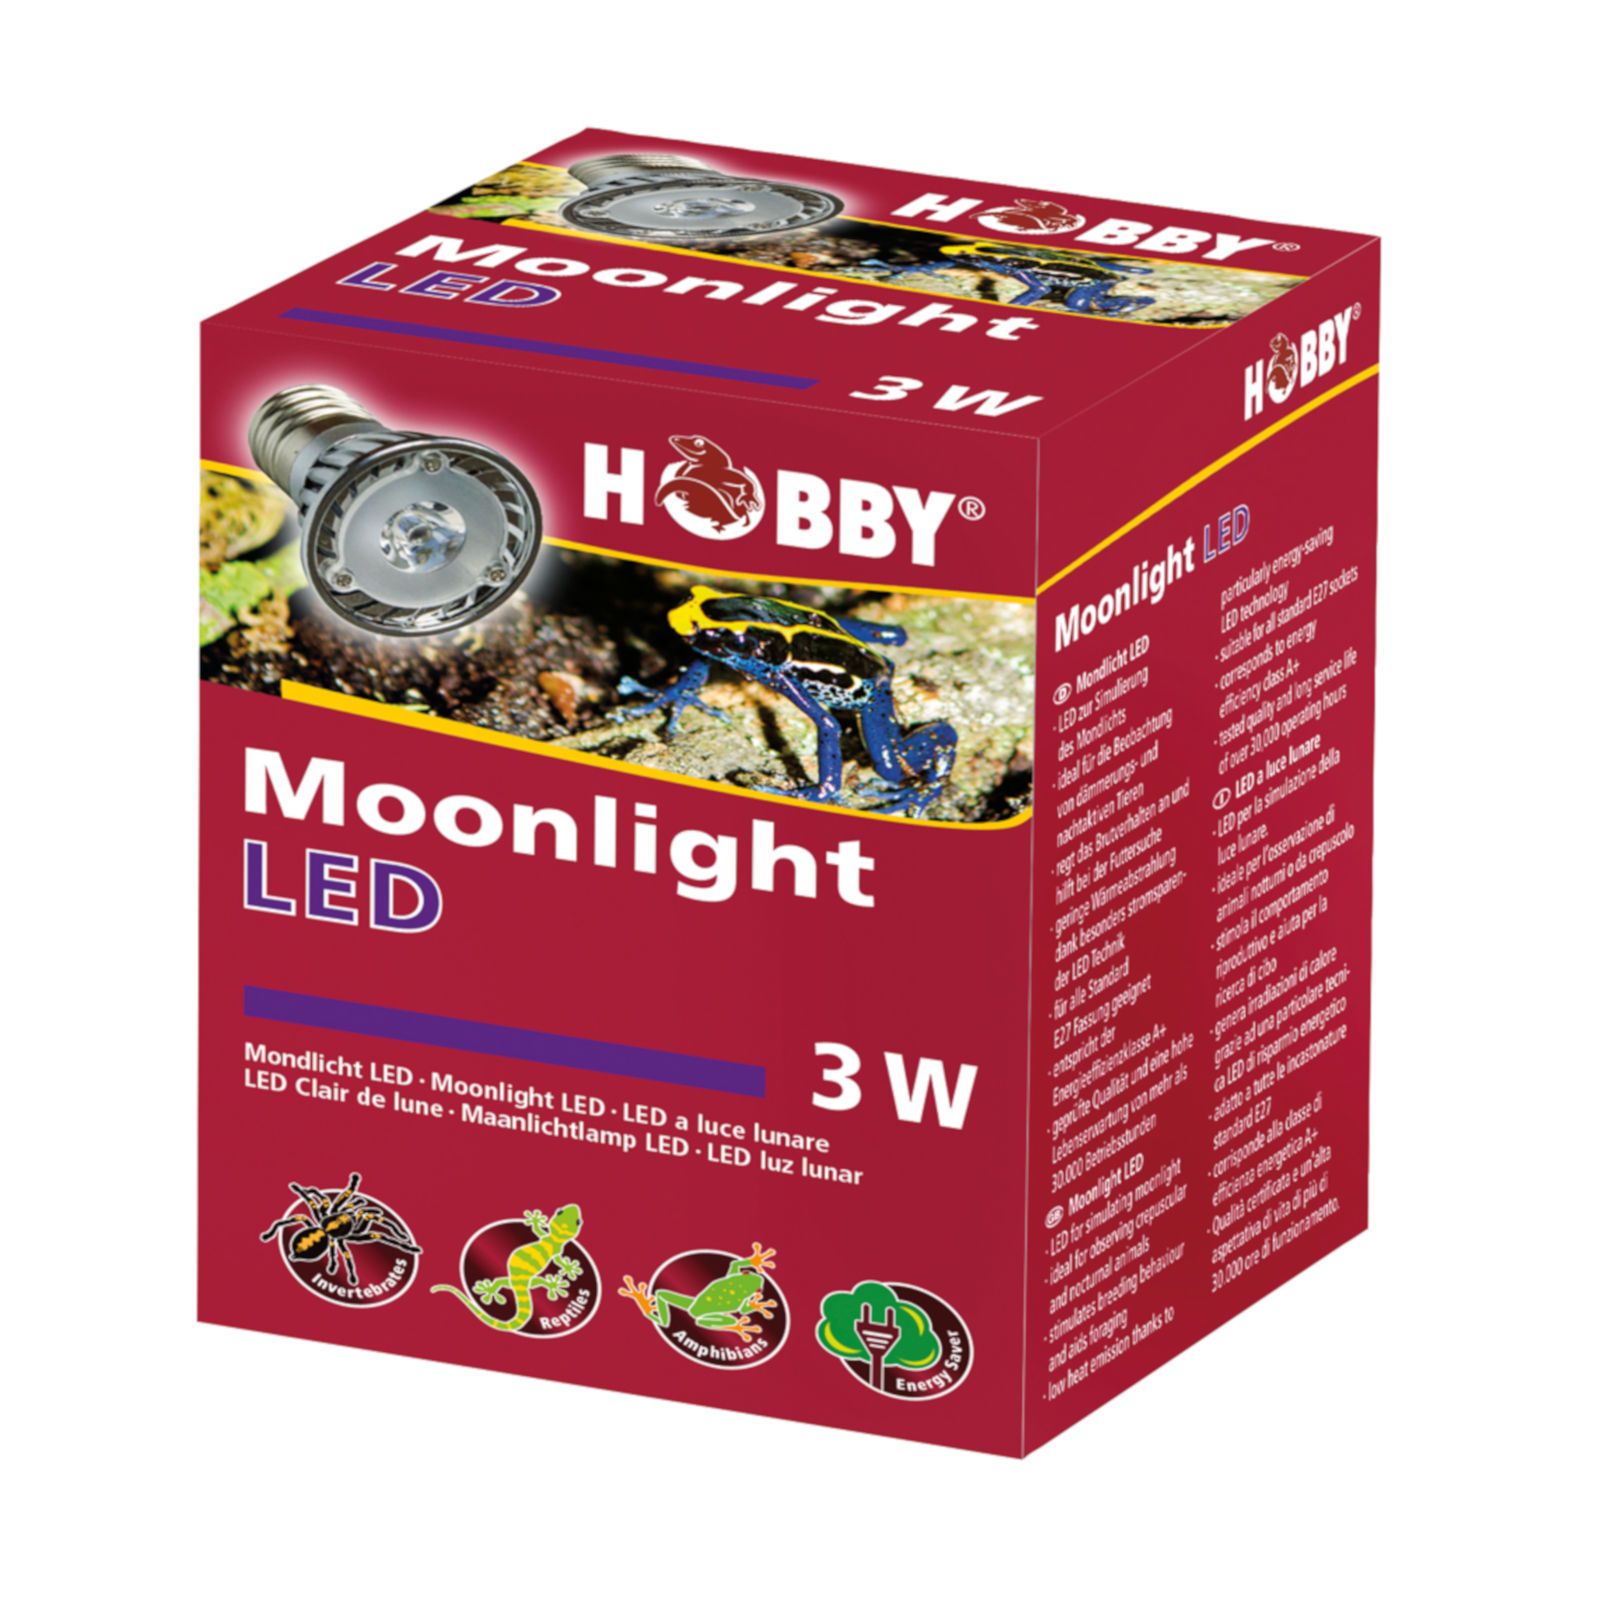 Hobby Moonlight LED - Mondlicht Strahler